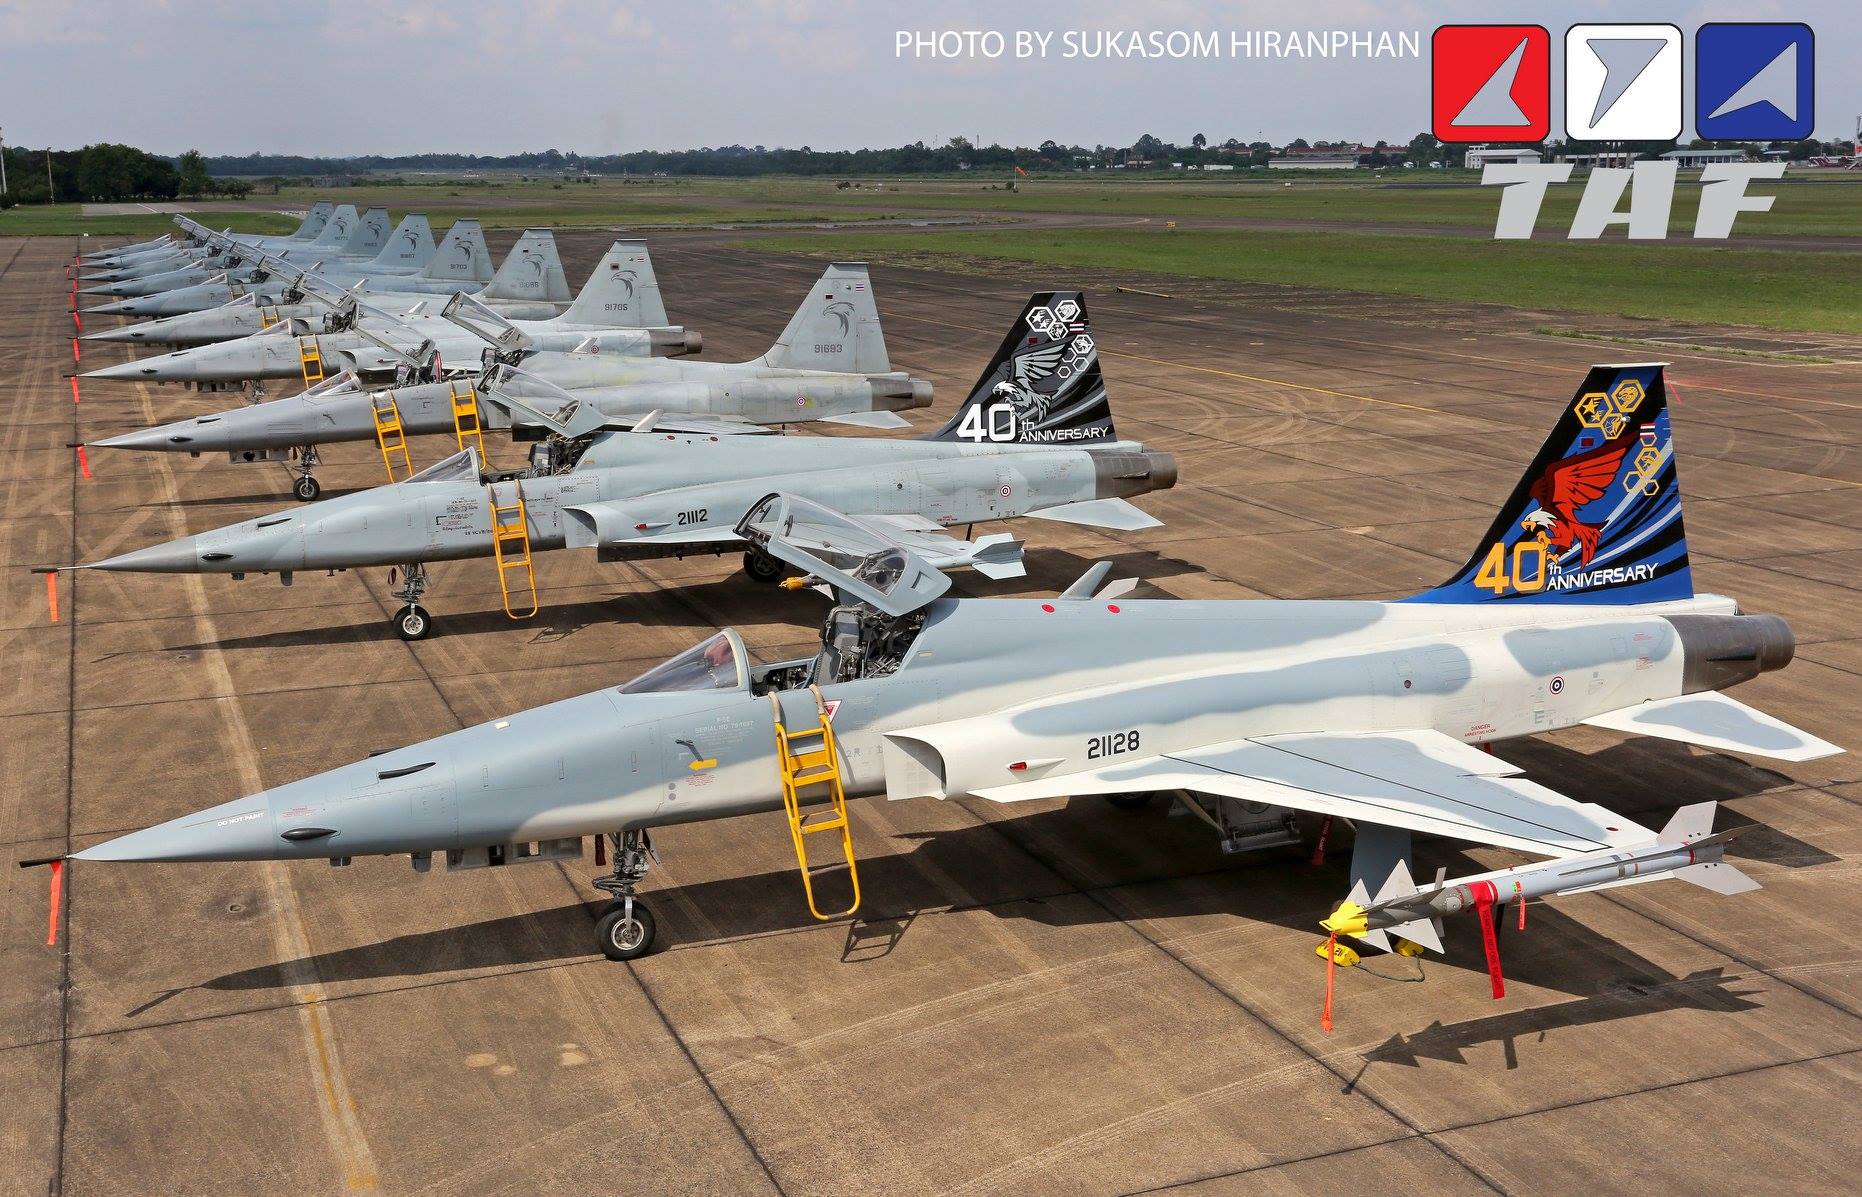 Os F-5E da Tailândia comemoraram 40 anos de operação em 2018